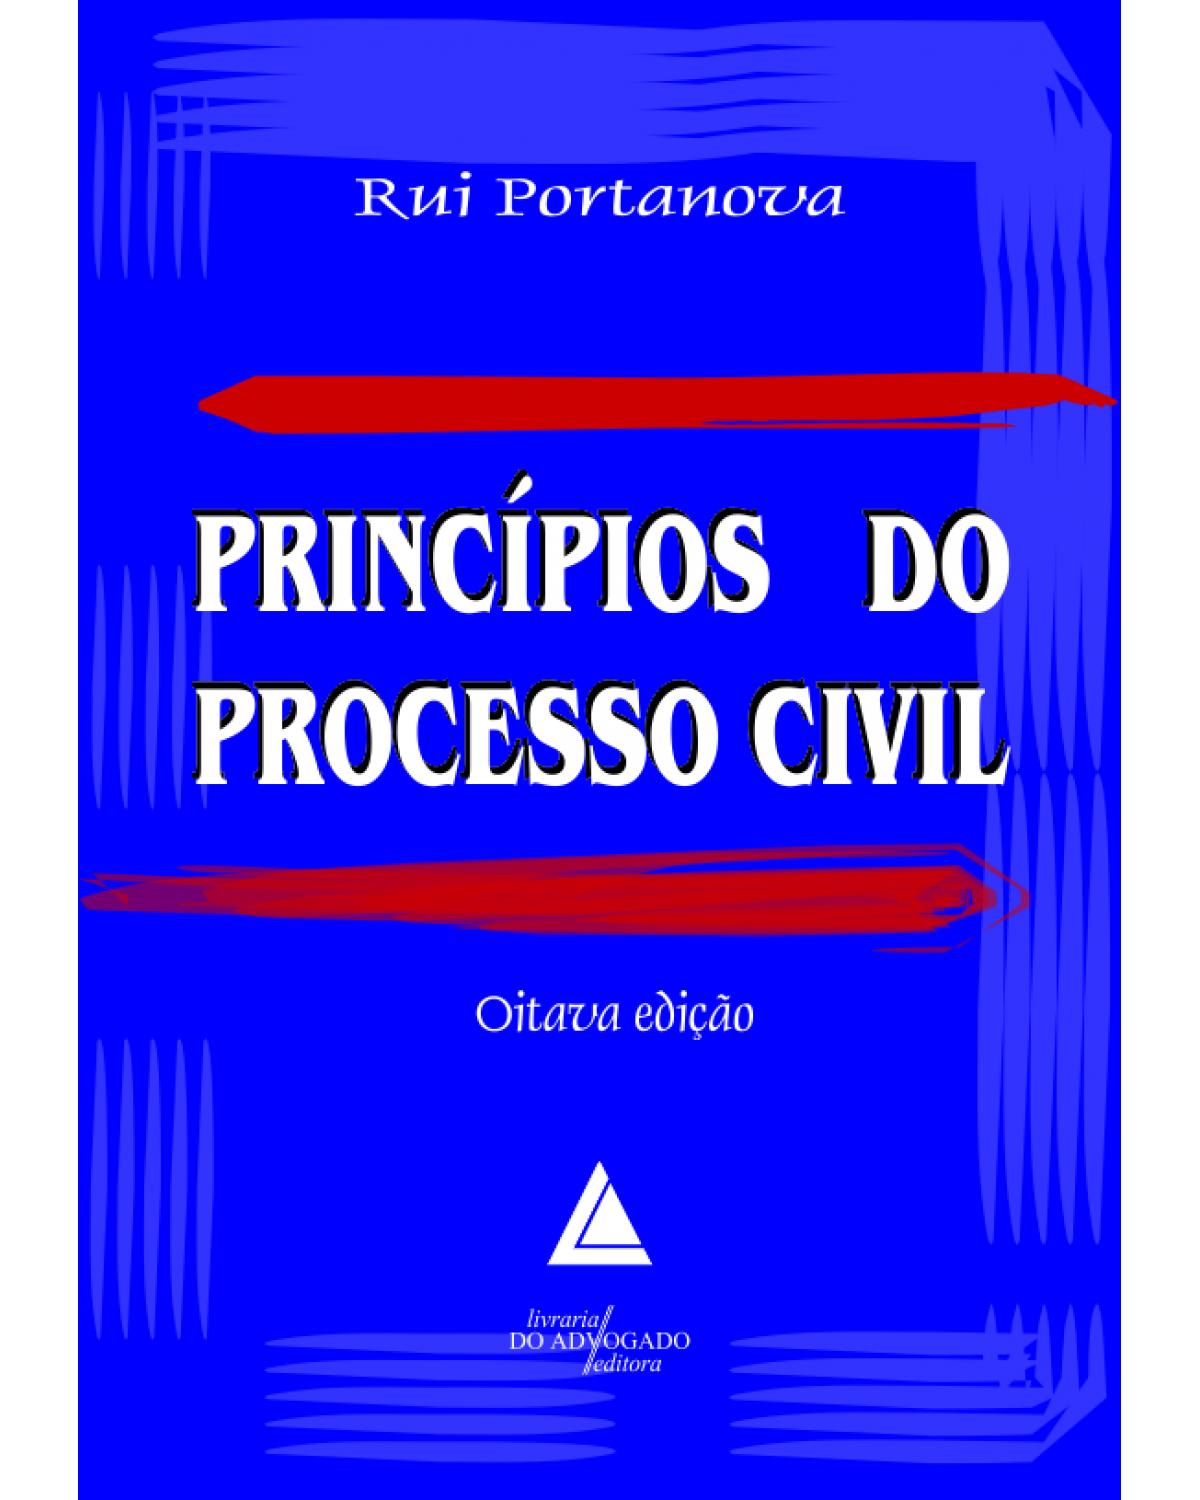 Princípios do processo civil - 8ª Edição | 2013